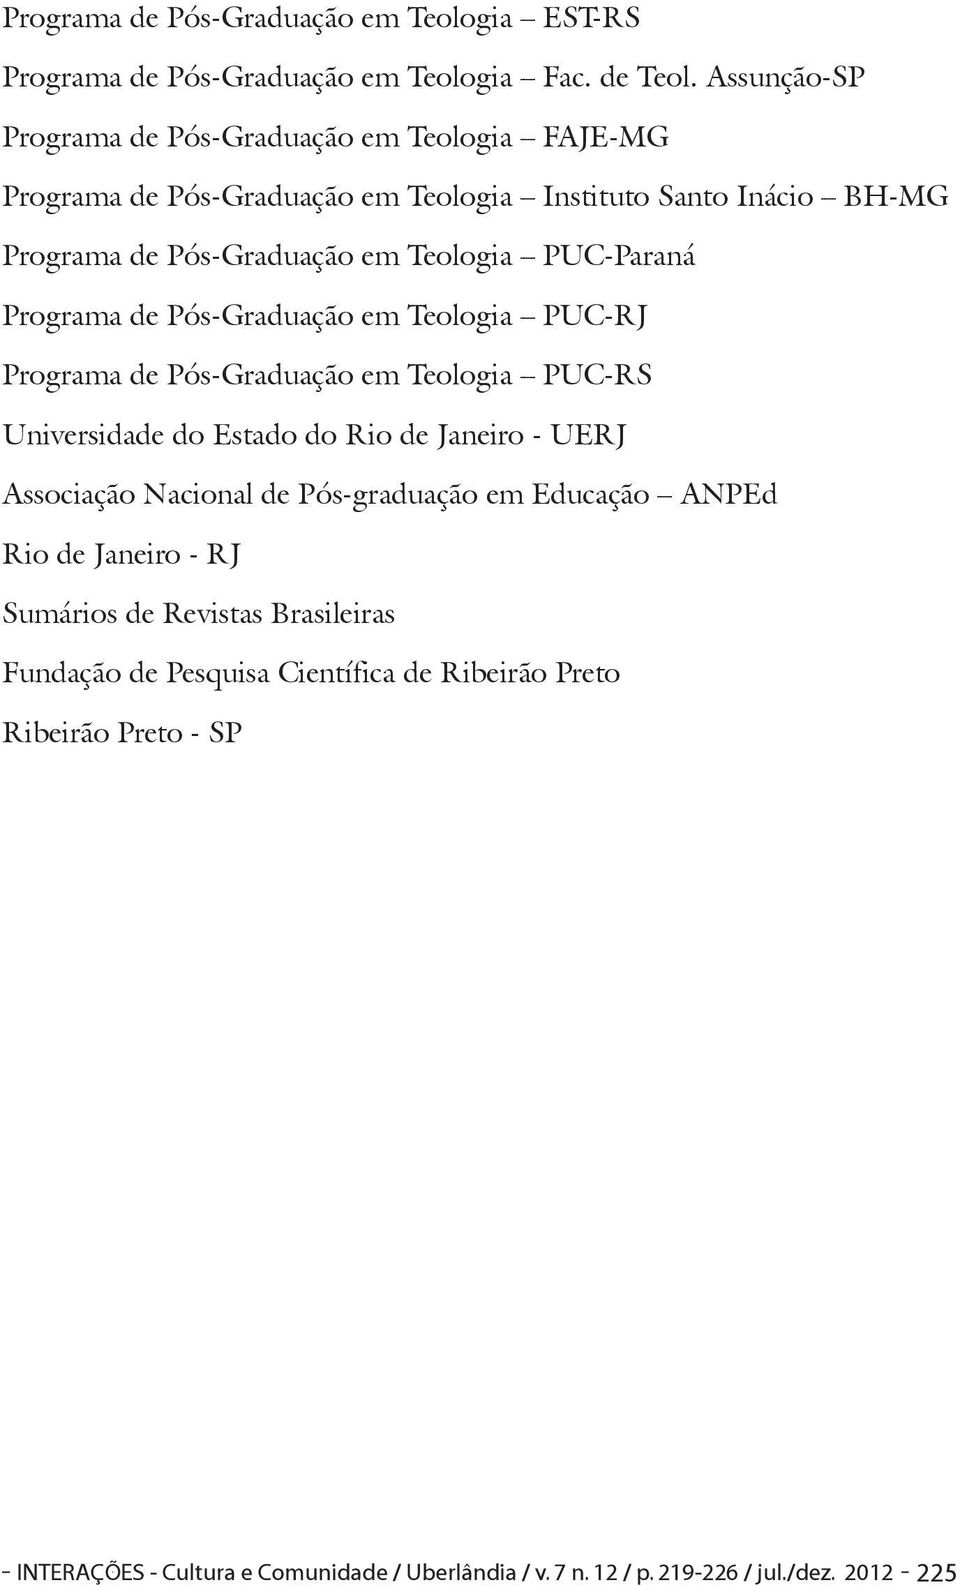 PUC-Paraná Programa de Pós-Graduação em Teologia PUC-RJ Programa de Pós-Graduação em Teologia PUC-RS Universidade do Estado do Rio de Janeiro - UERJ Associação Nacional